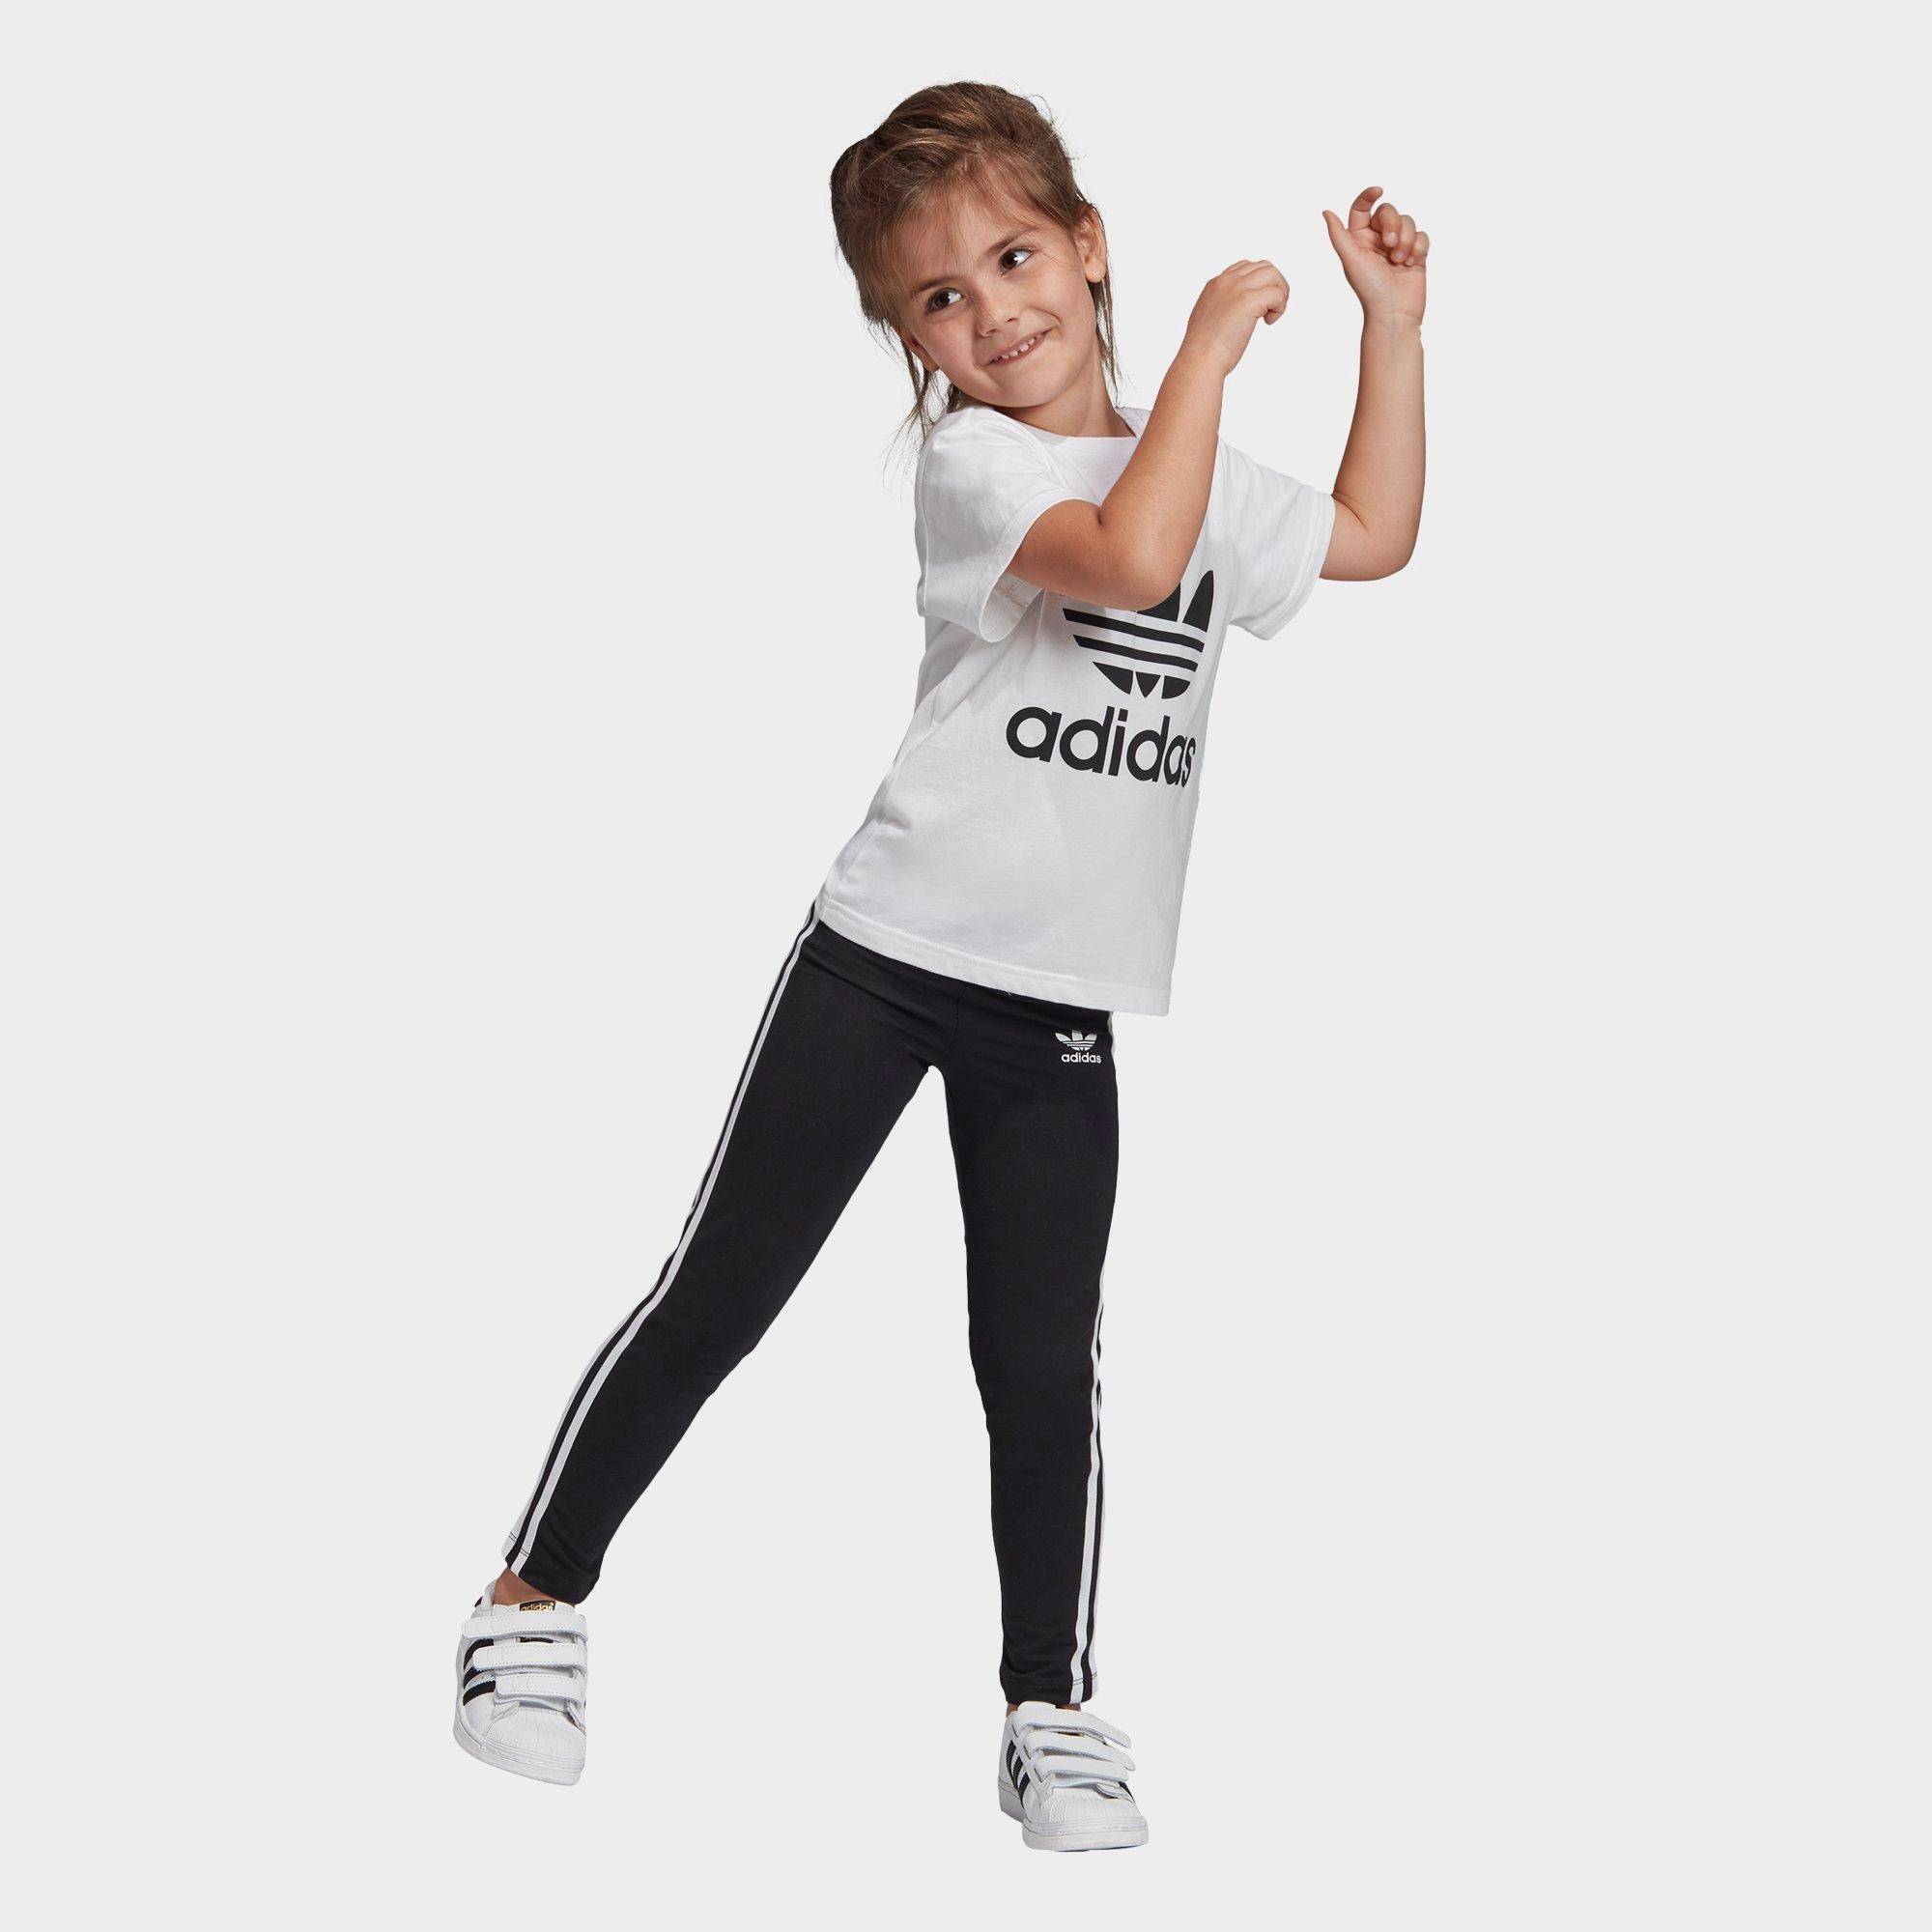 adidas toddler girl clothes